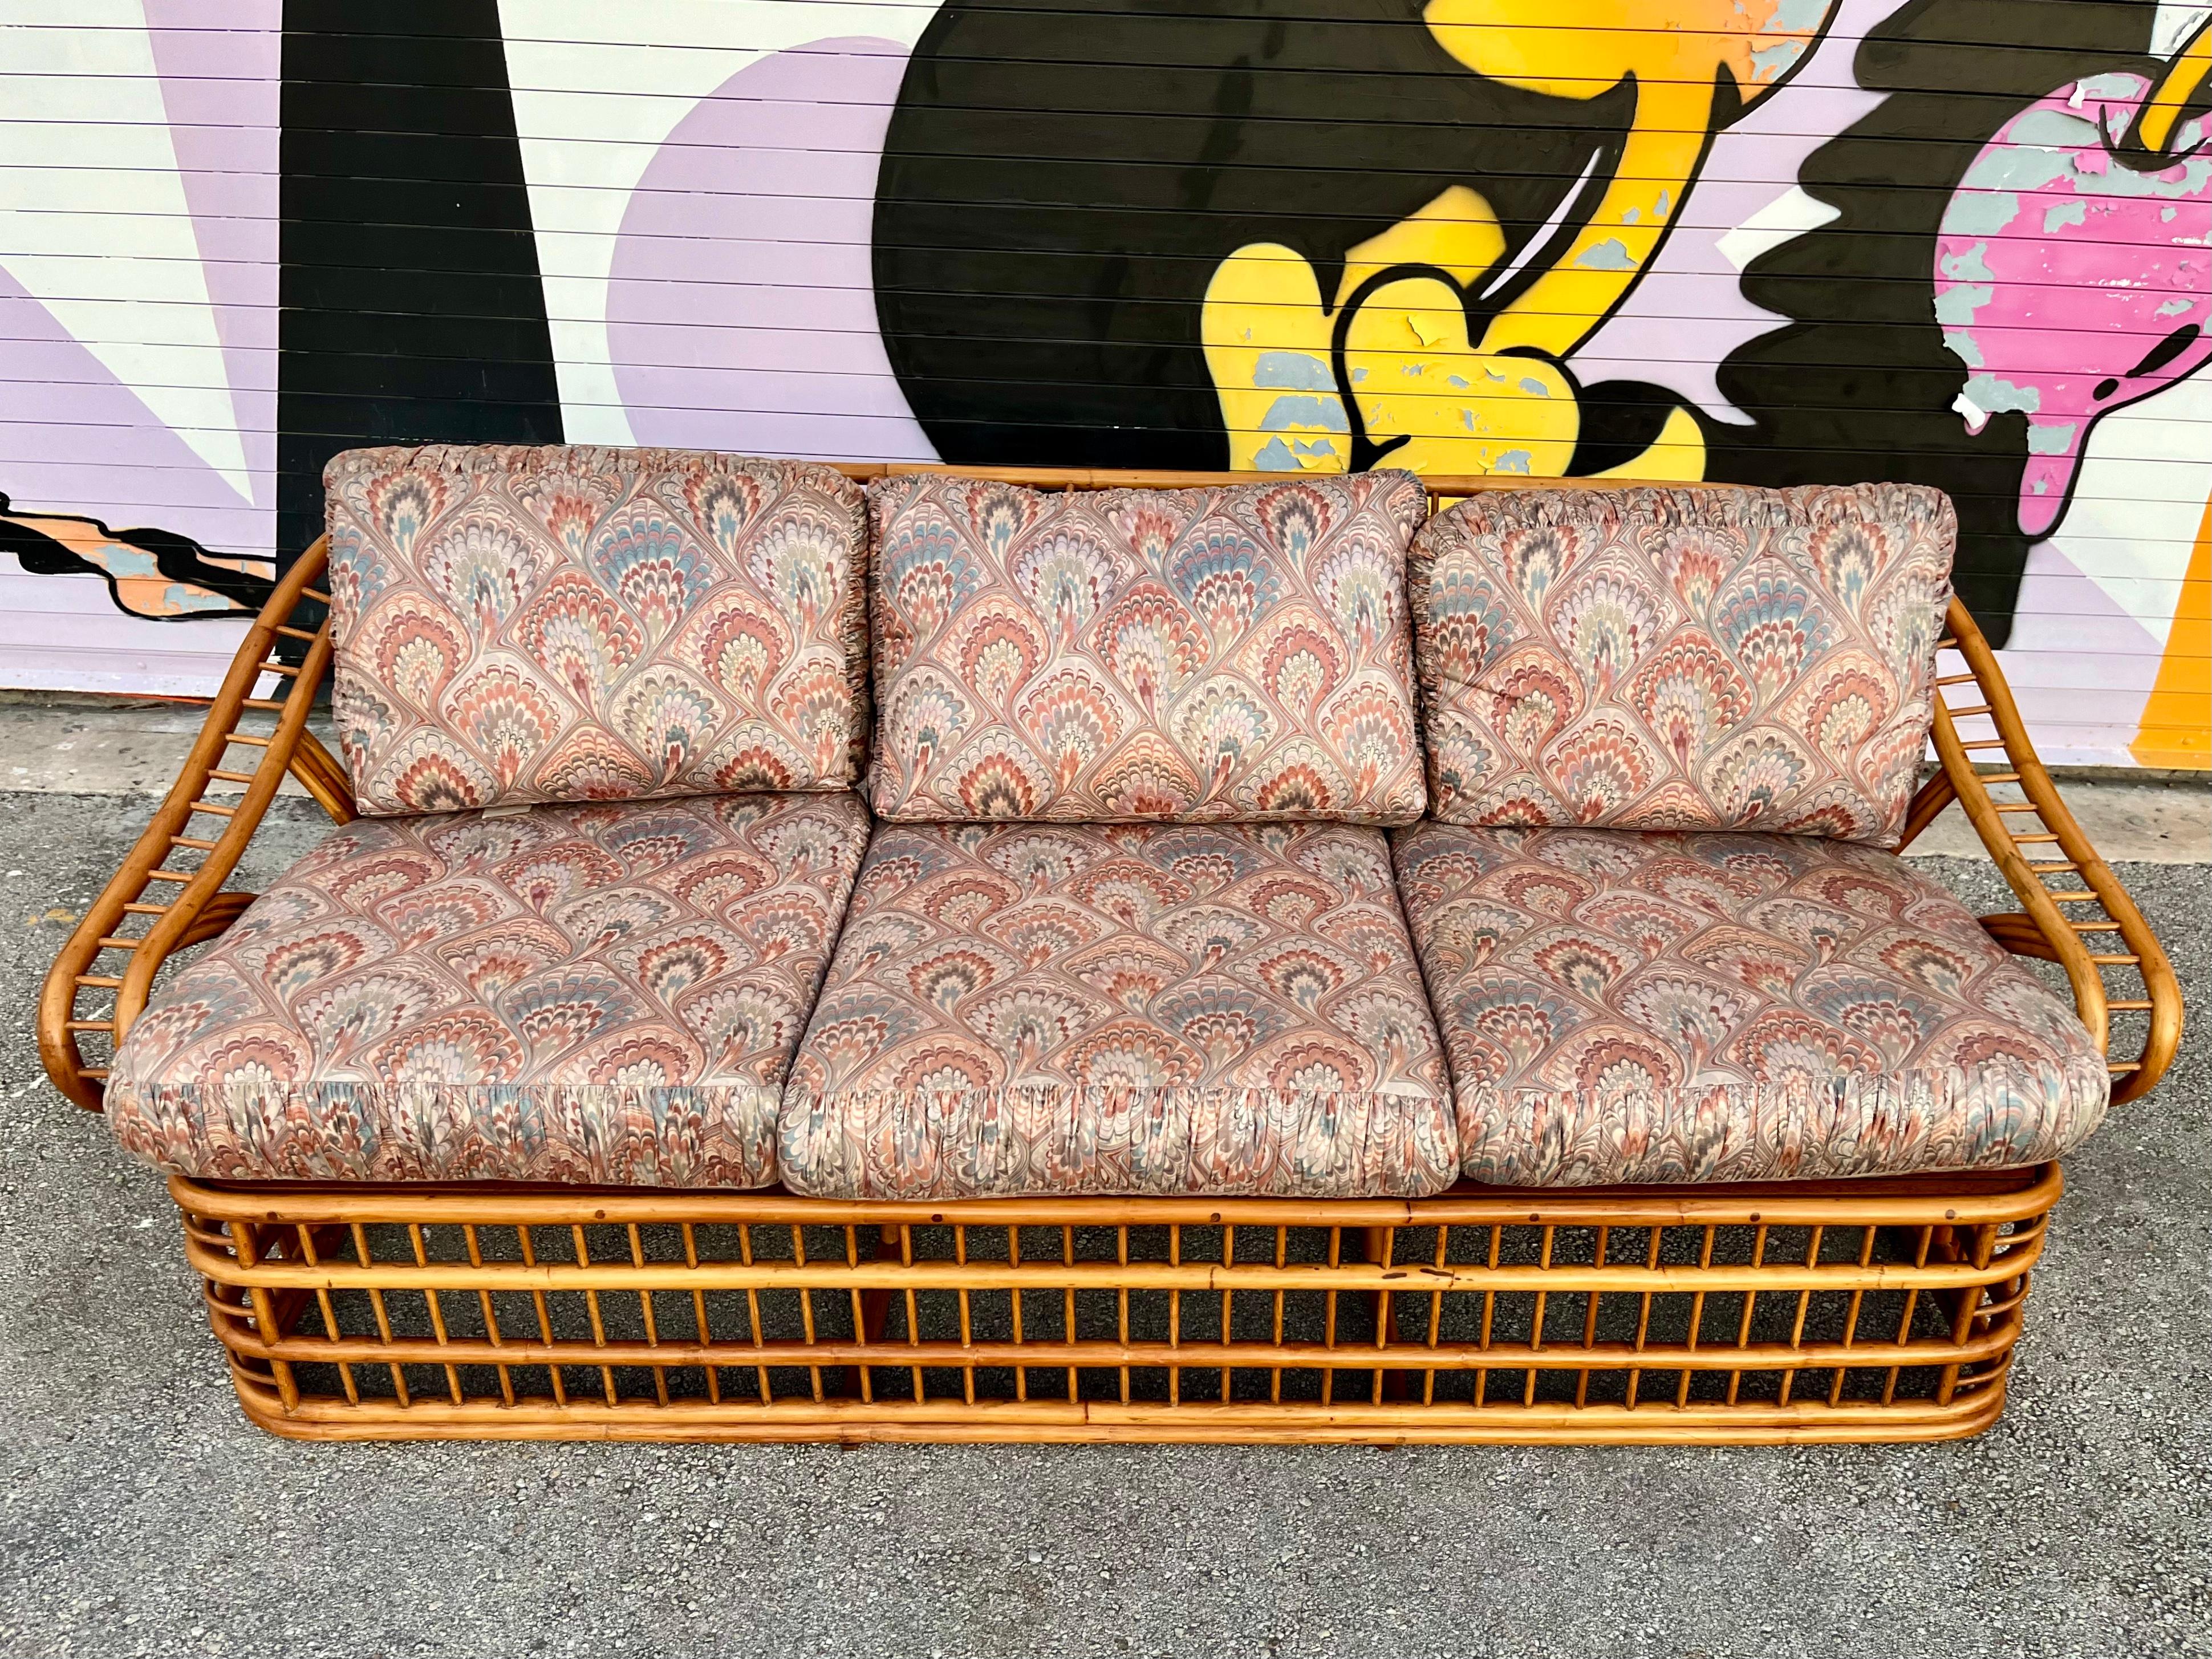 Vintage Coastal Style Rattan Drei Sitze Sofa von Whitecraft Rattan Inc, Miami FL. Circa 1970er Jahre
Der Rahmen aus gebogenem Rattan ist mit einem komplizierten und dynamischen, fließenden Design an der Rückenlehne und den Armlehnen versehen. 
In